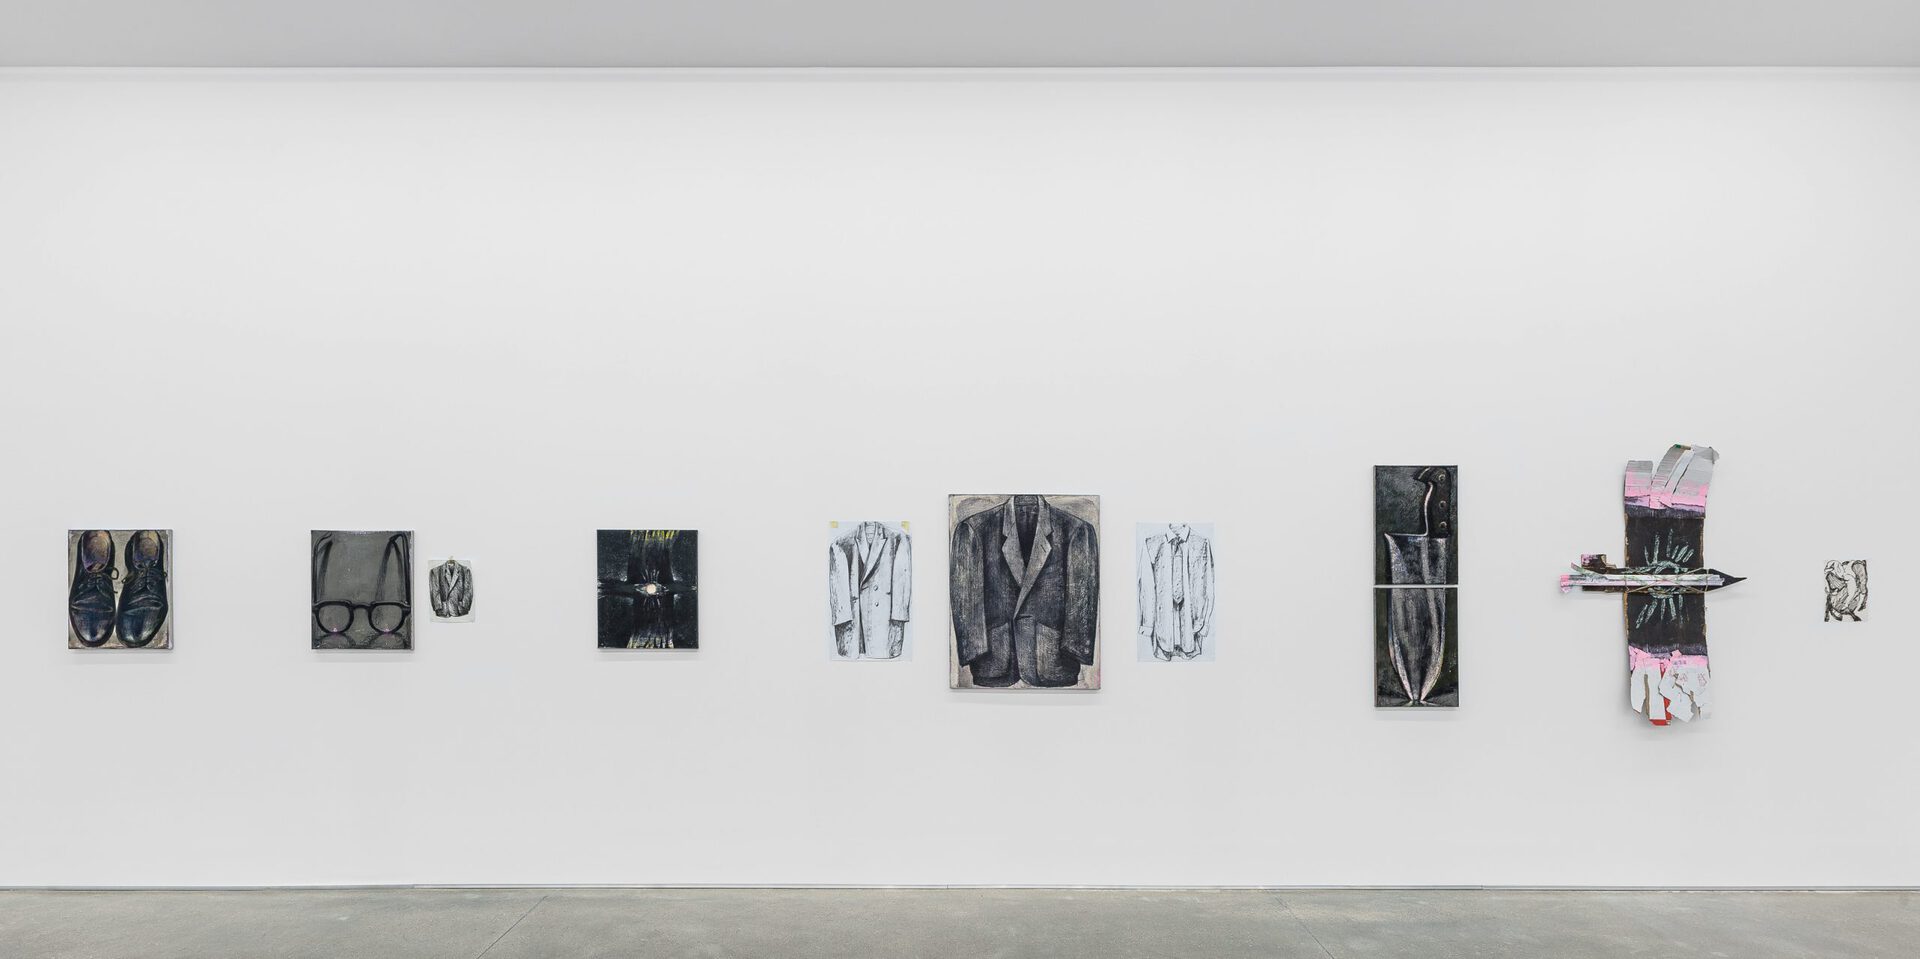 Alex Foxton, "Hex", exhibition view, 2022, Galerie Derouillon, Paris